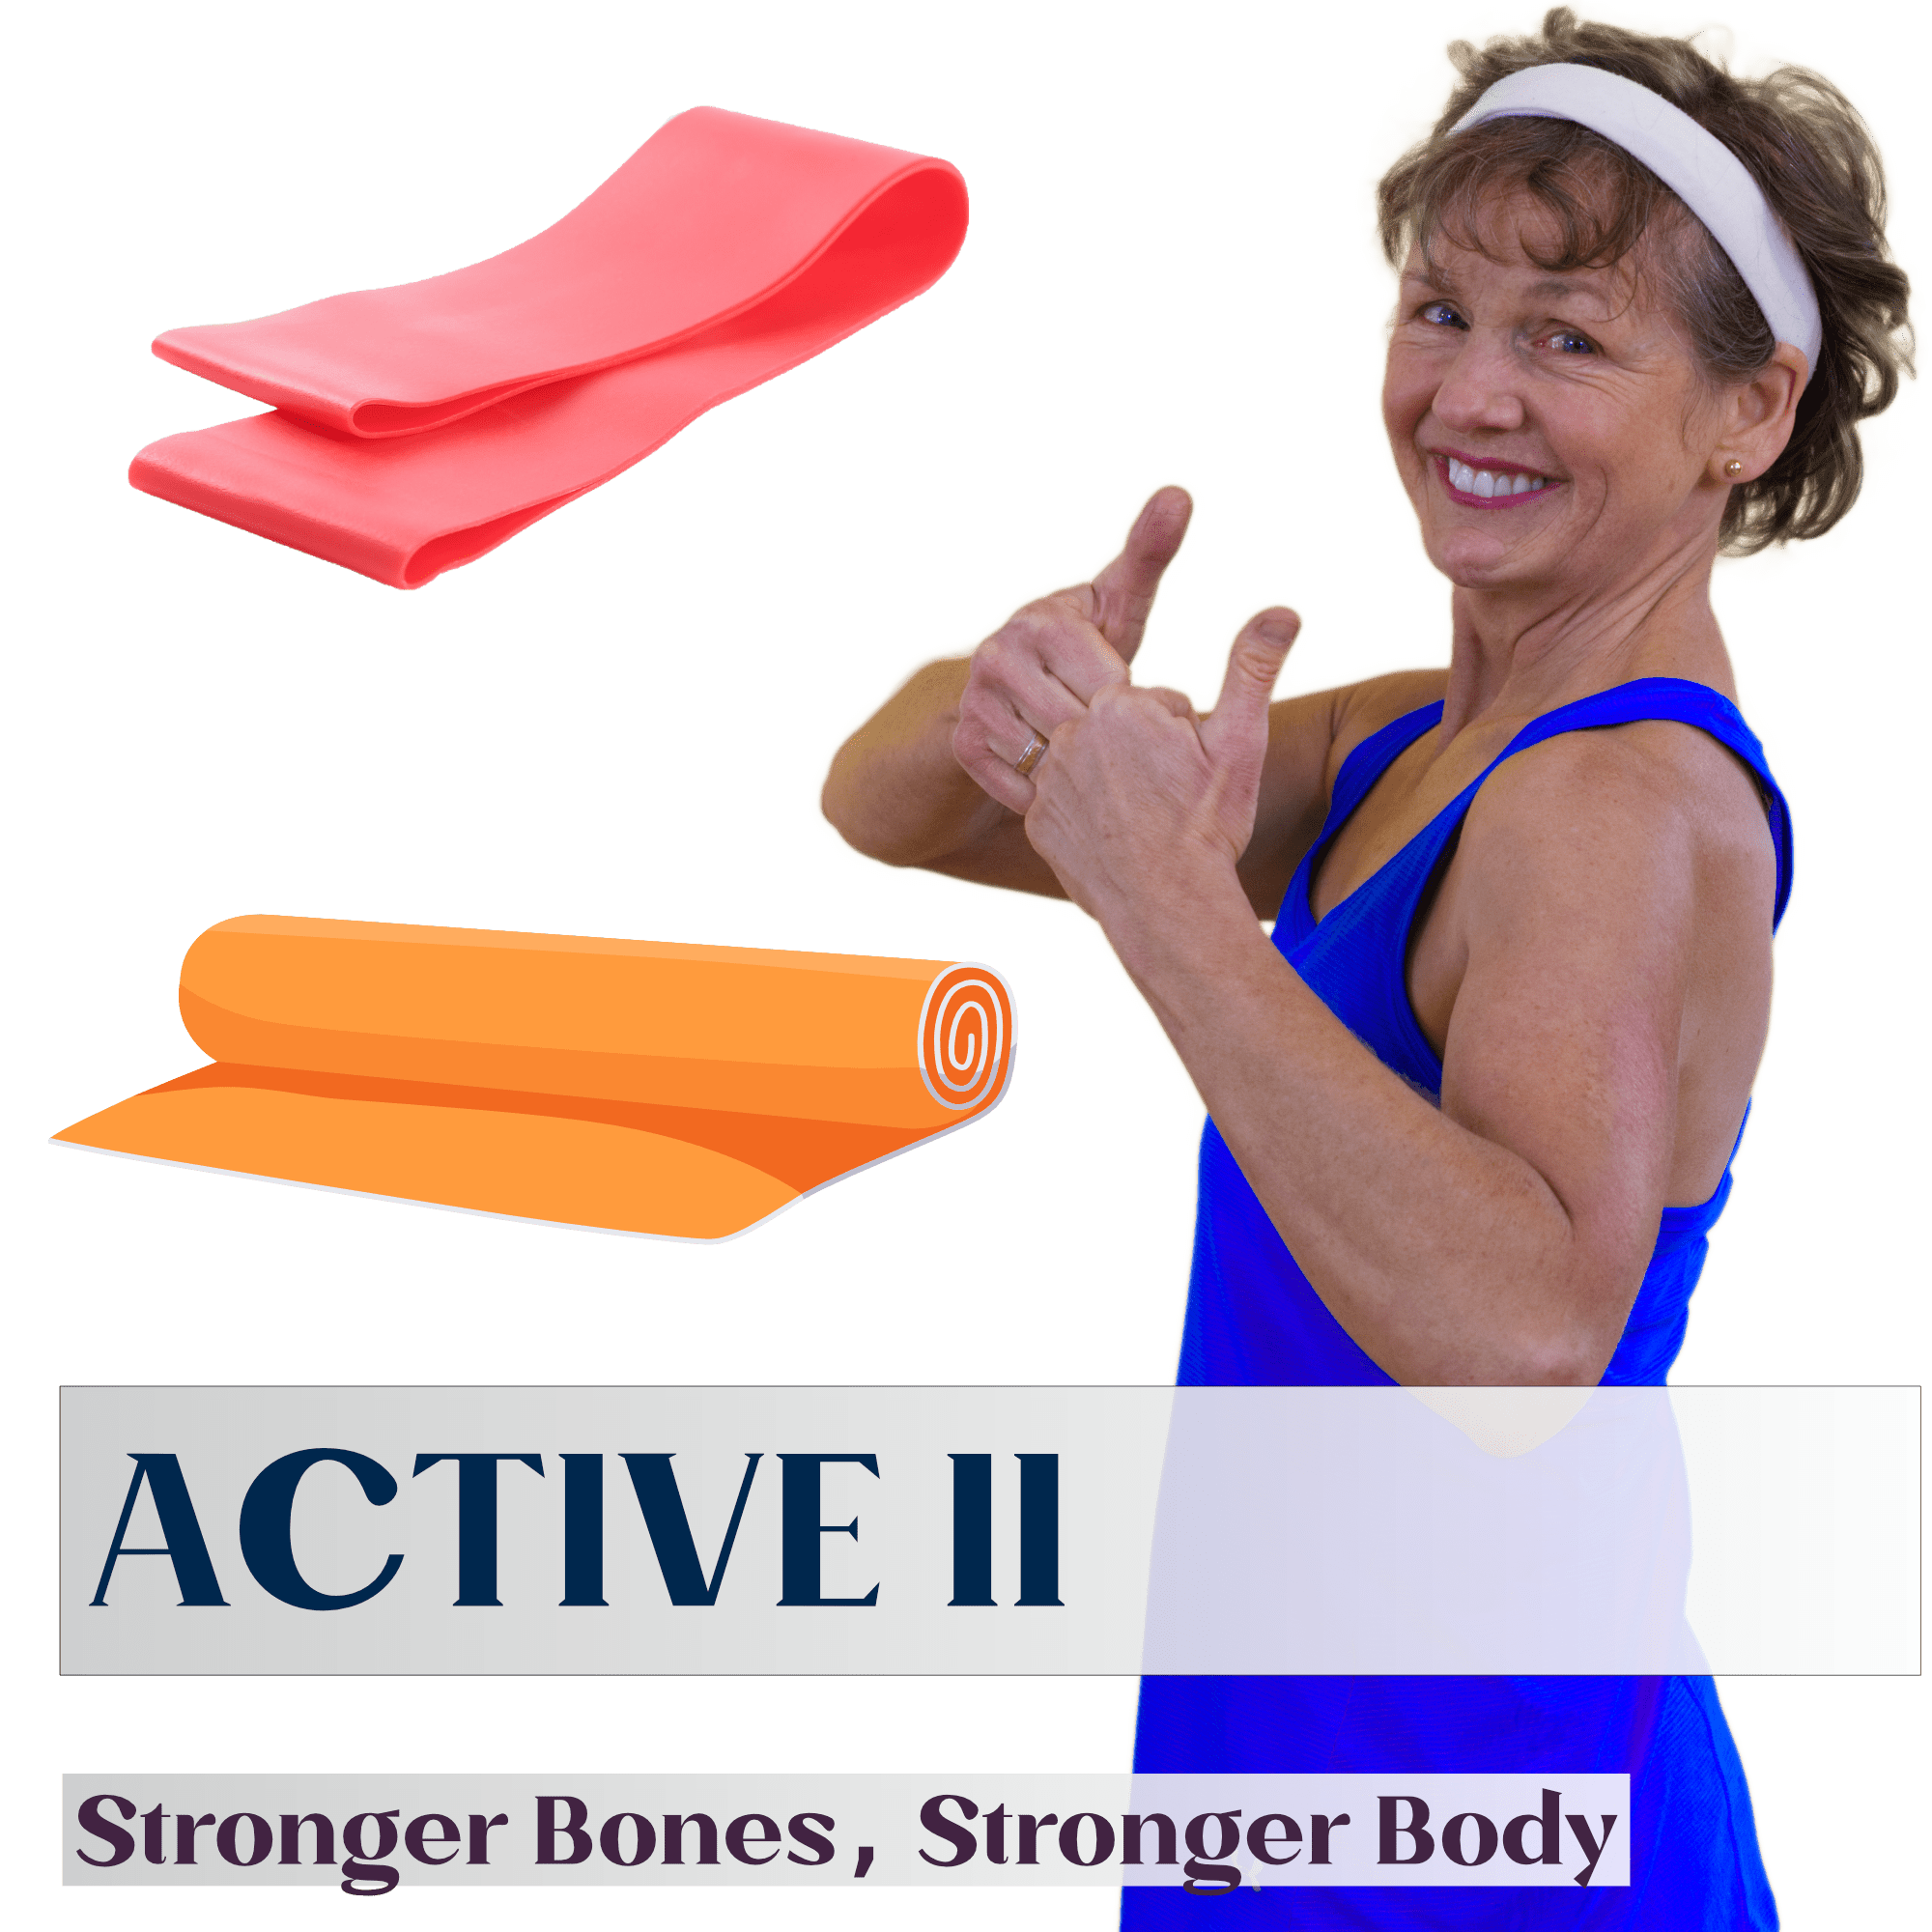 ACTIVE II Equipment: Stronger Bones, Stronger Body